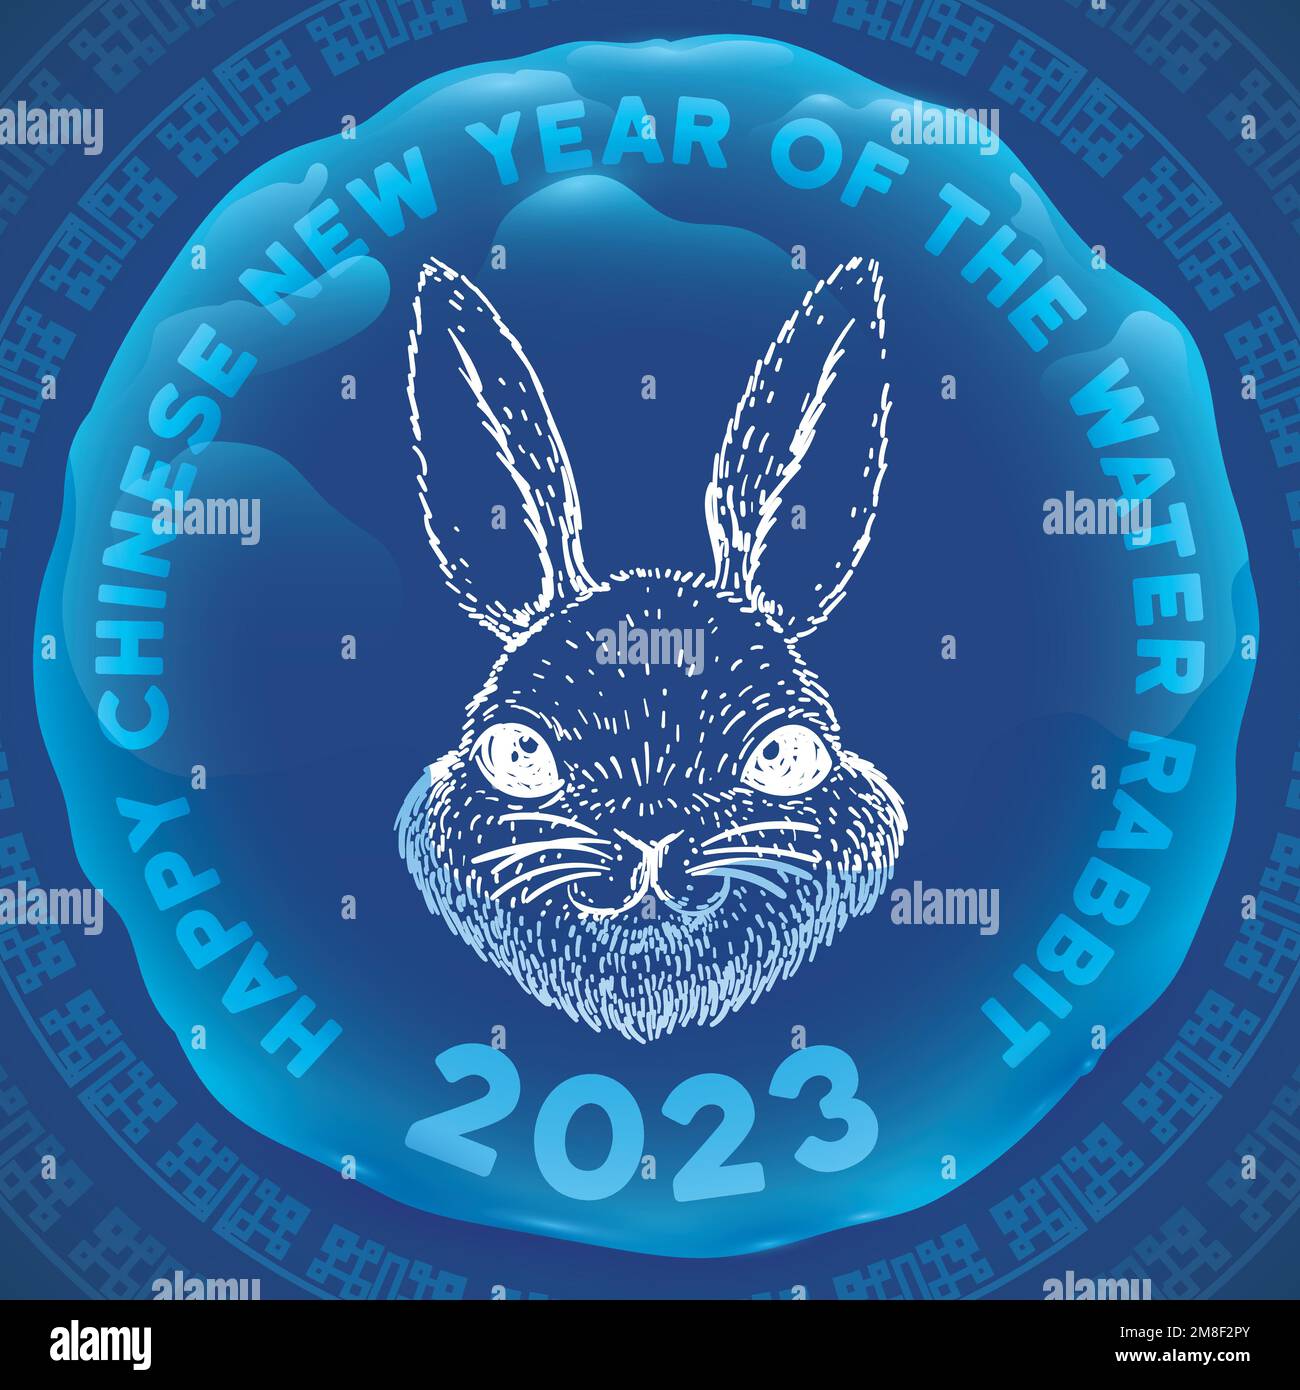 Motif bleu avec dessin de lapin à l'intérieur d'une goutte d'eau, célébrant cet élément et animal pour le nouvel an chinois de 2023. Illustration de Vecteur